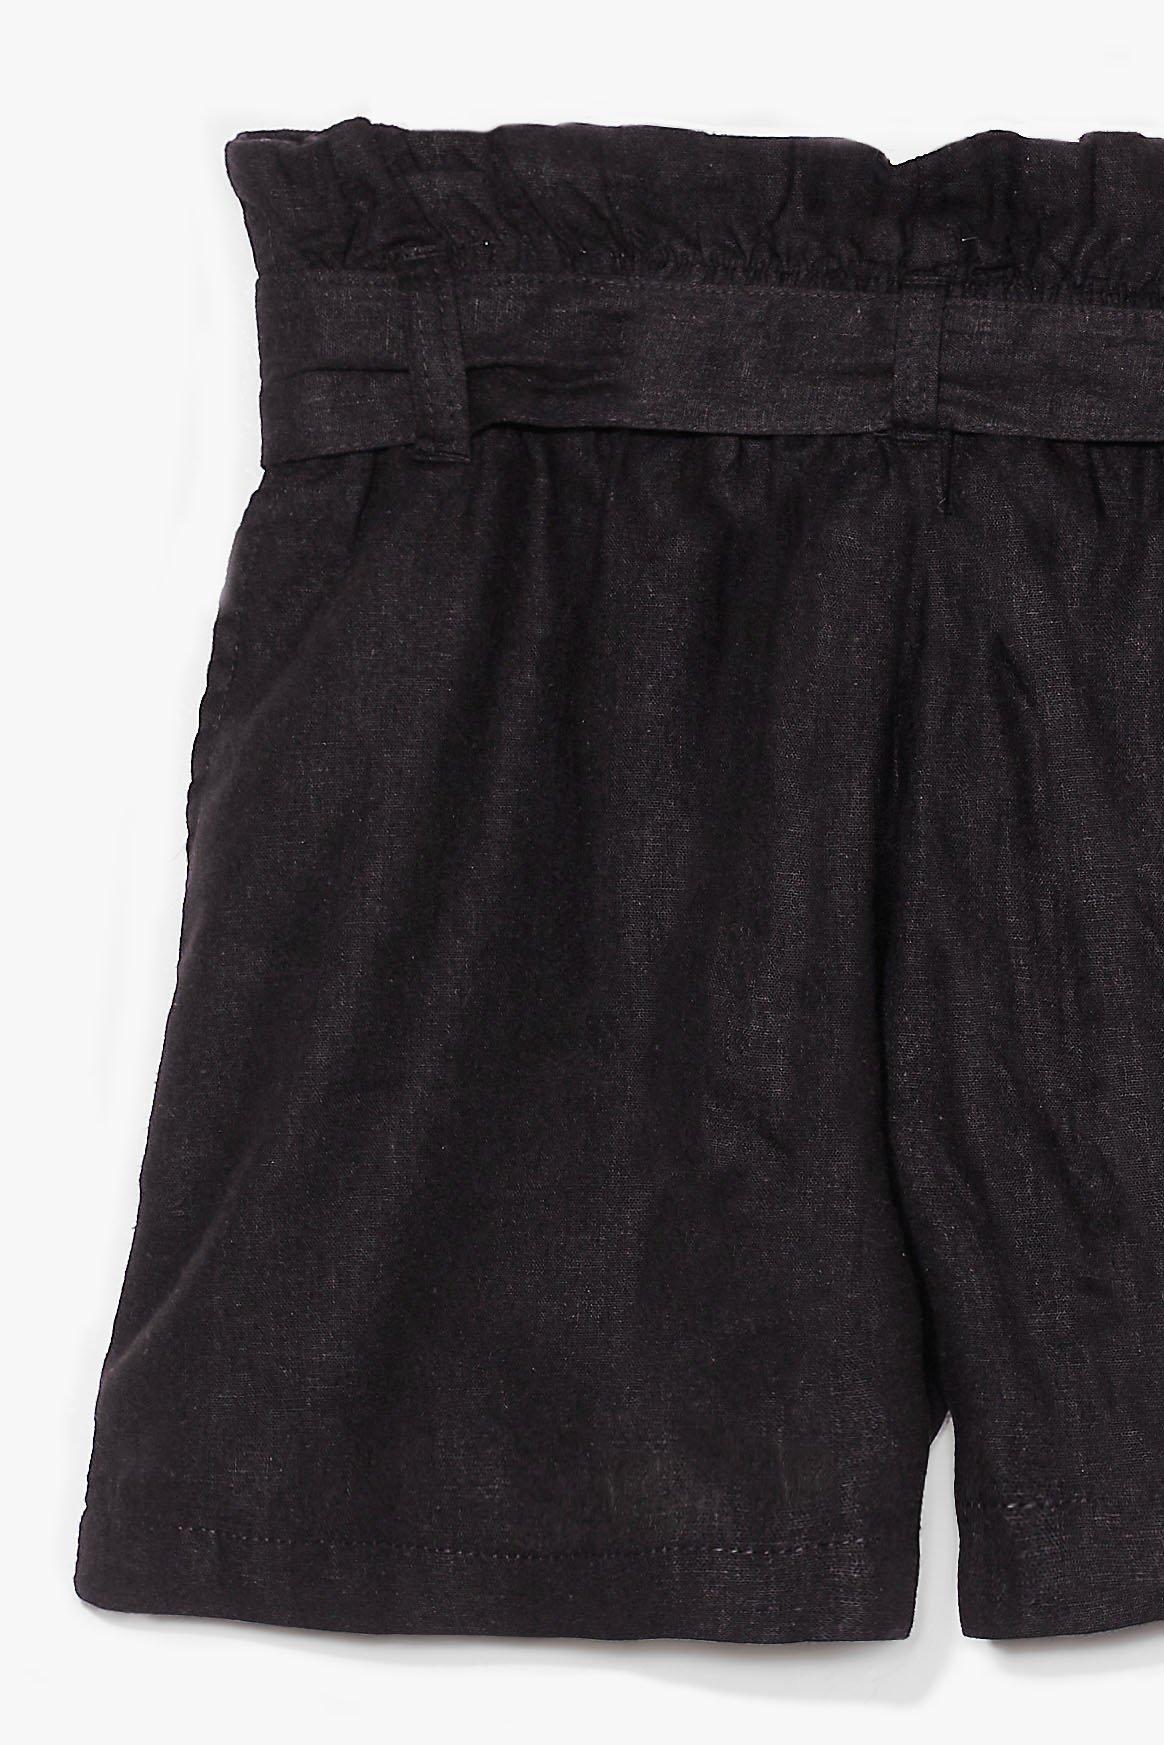 high waisted black linen shorts